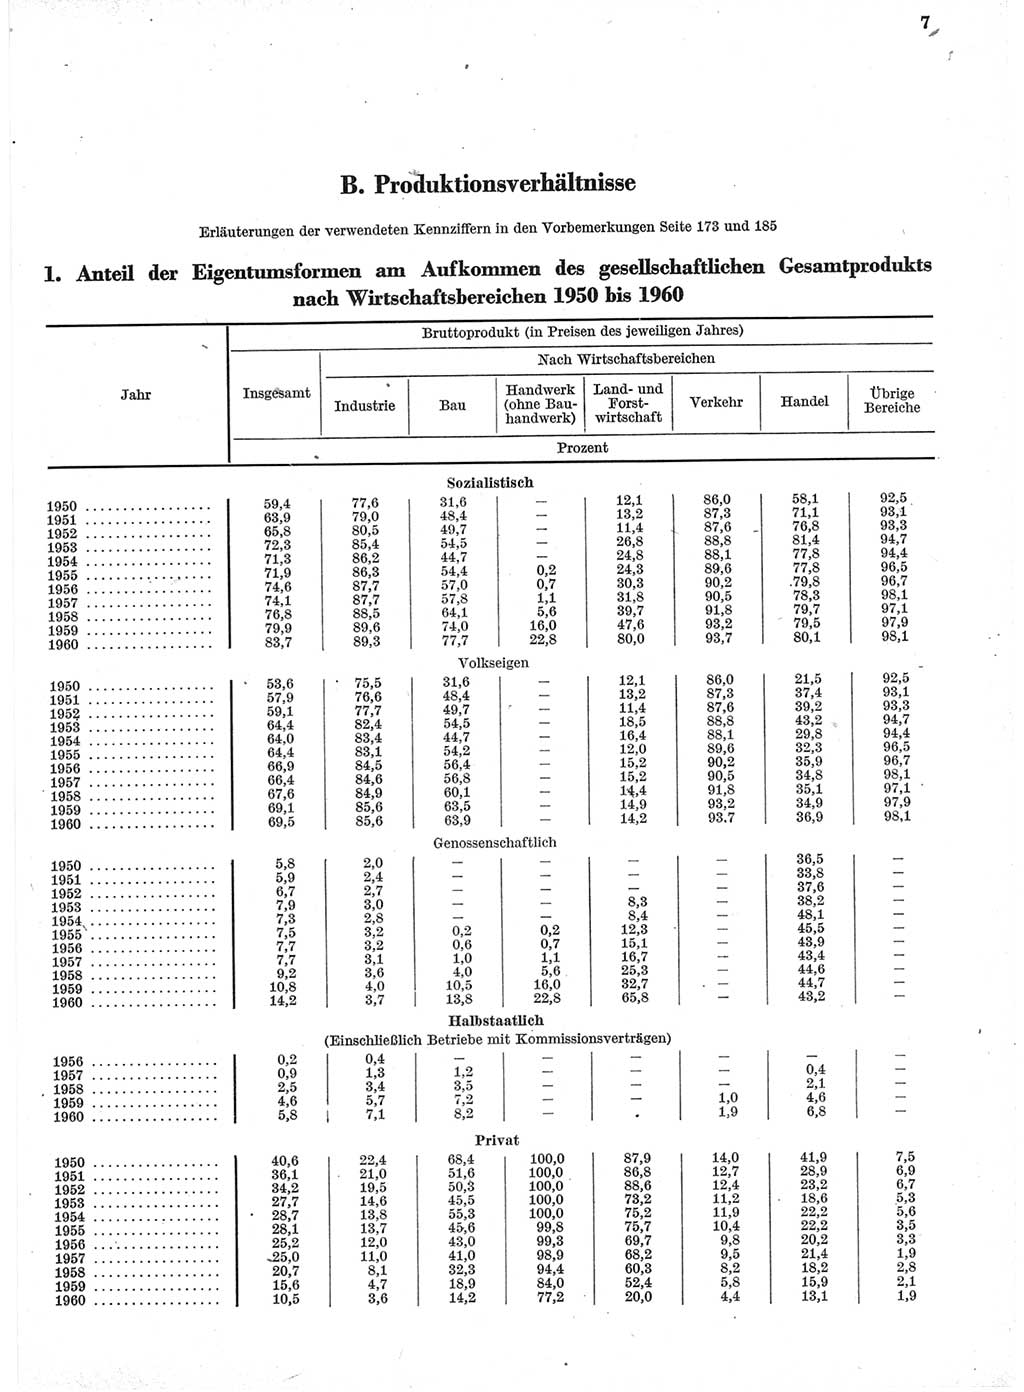 Statistisches Jahrbuch der Deutschen Demokratischen Republik (DDR) 1960-1961, Seite 7 (Stat. Jb. DDR 1960-1961, S. 7)